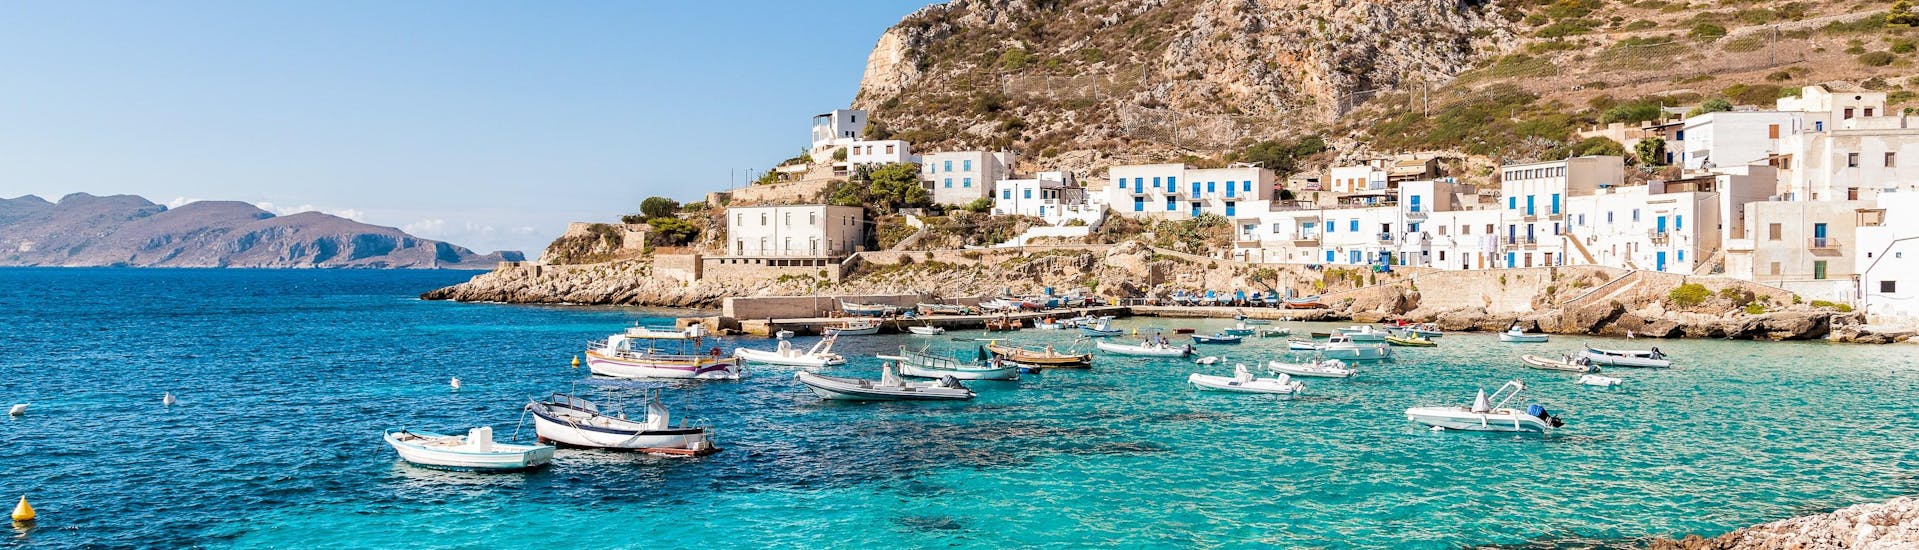 Ein Blick auf die Küste der Insel Levanzo, die Besucher bei einer Bootstour zu den Ägadischen Inseln in Sizilien sehen können.